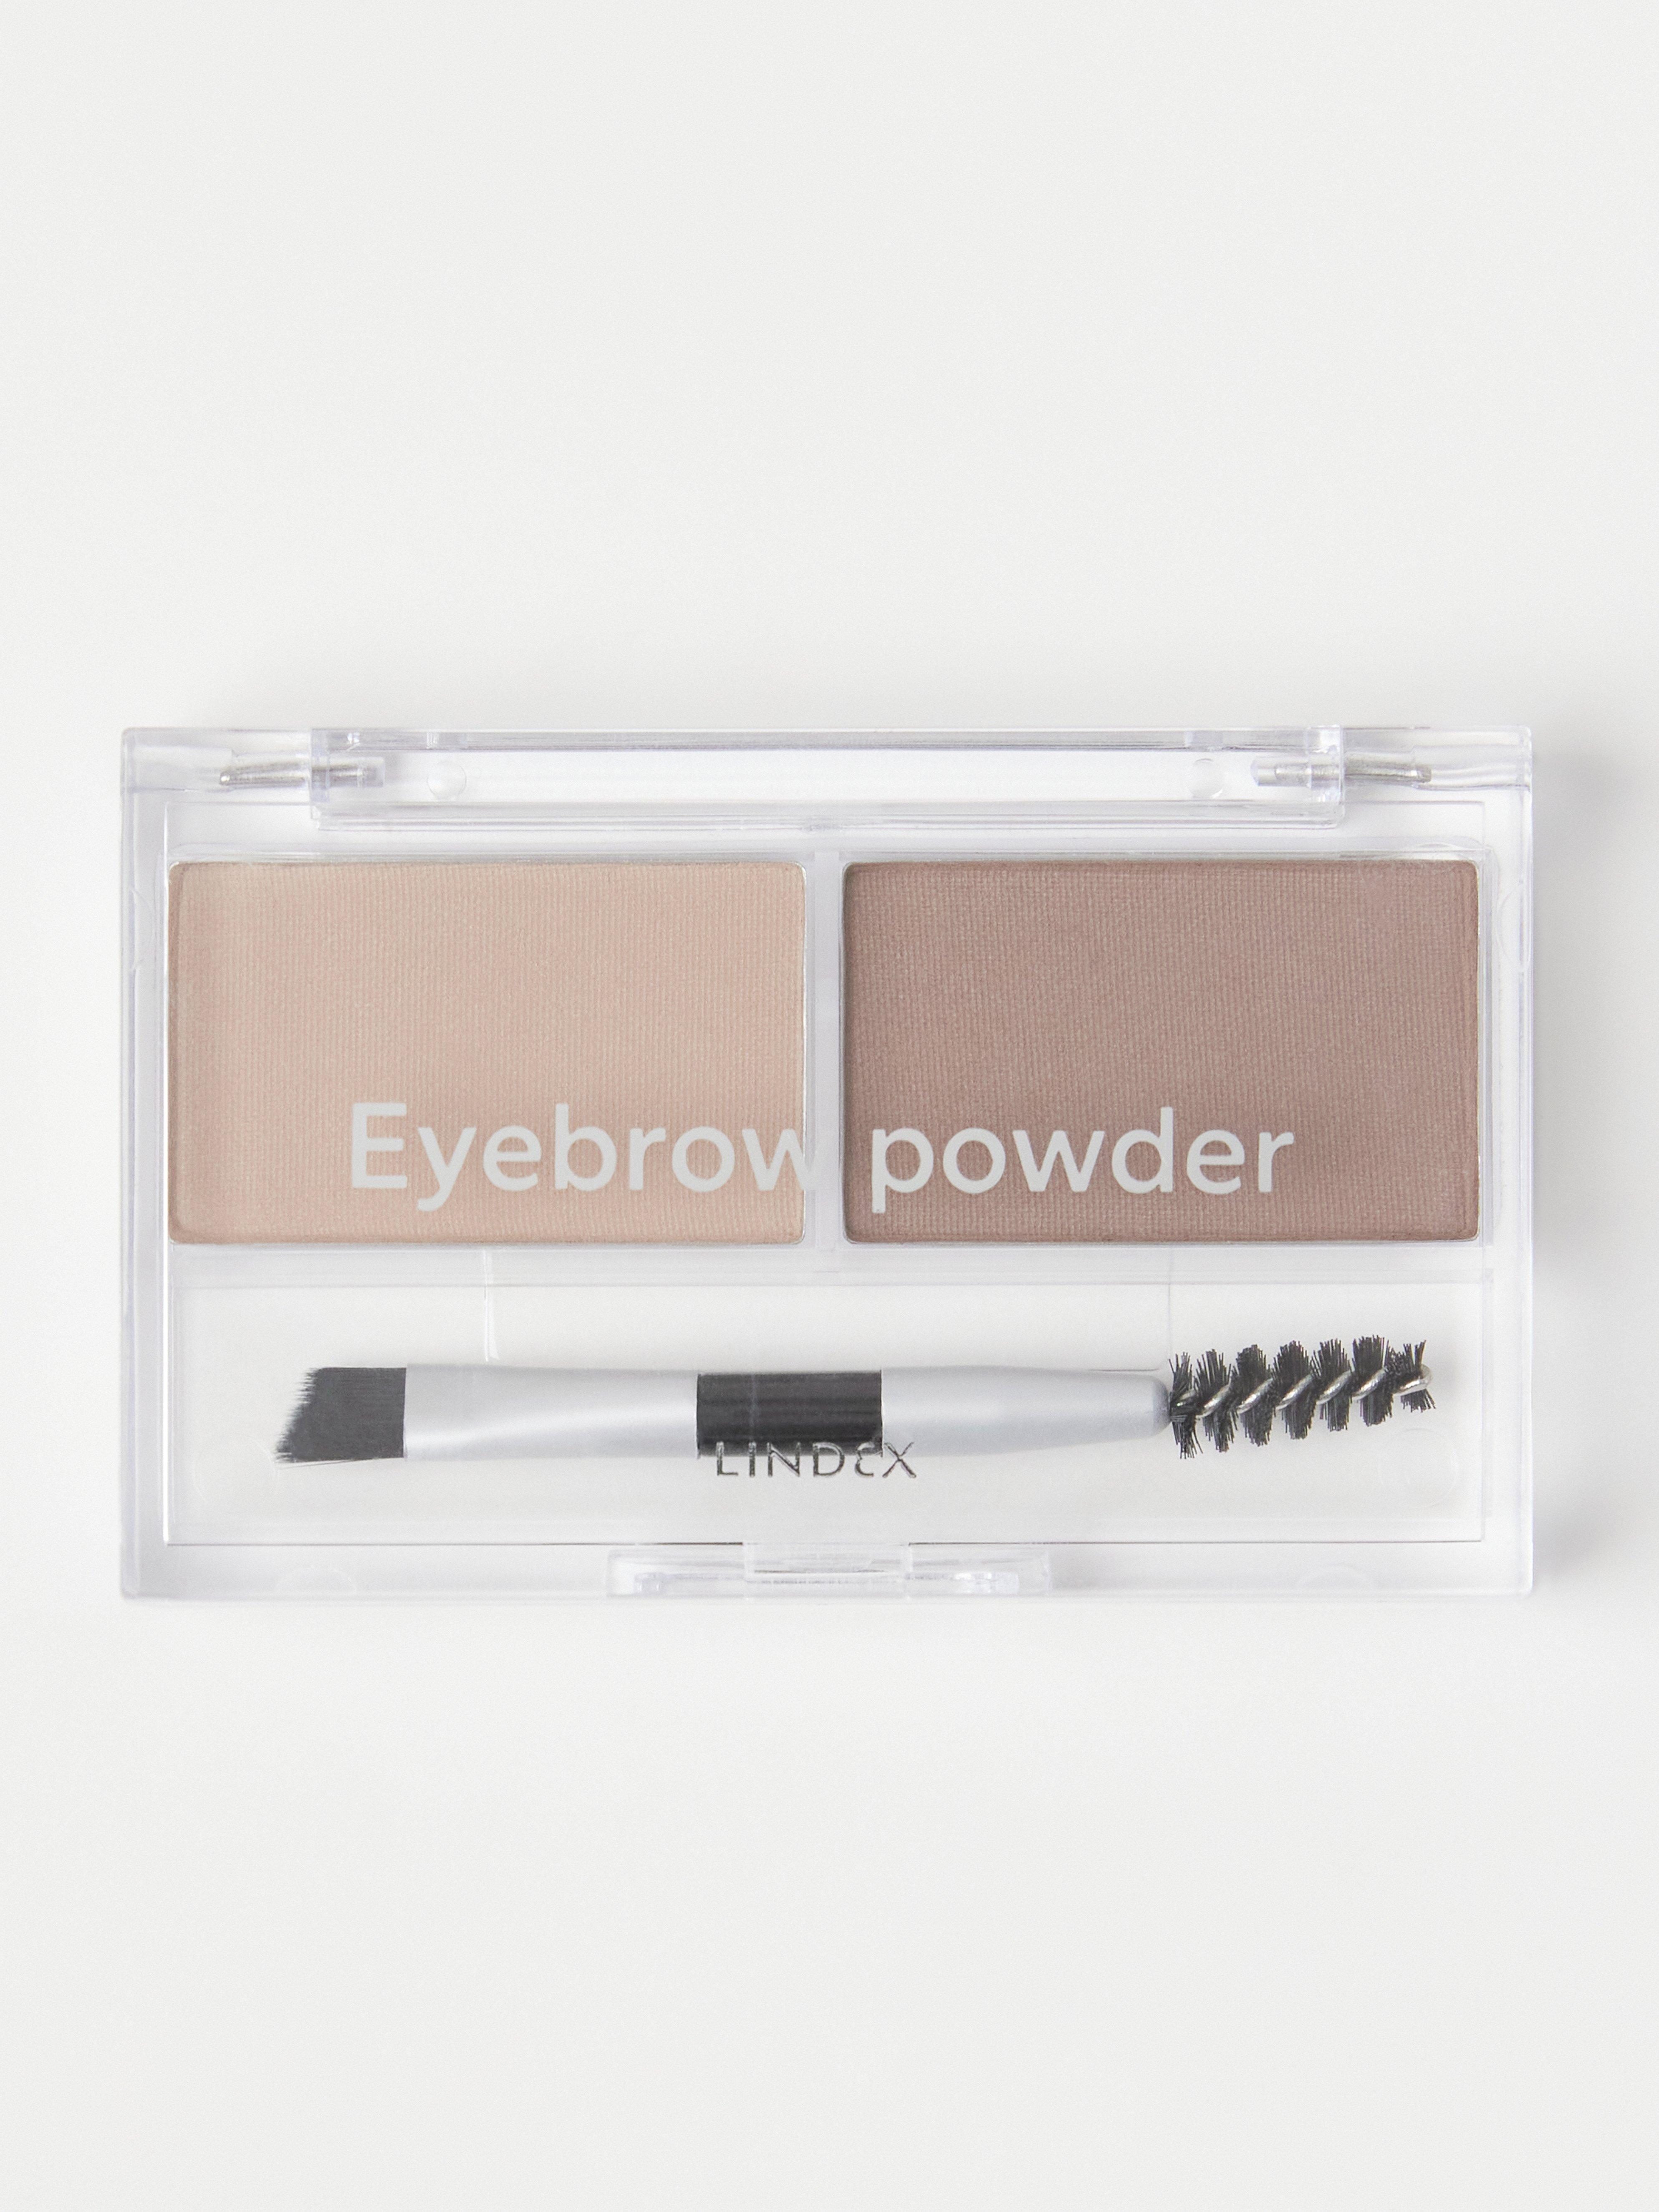 Eyebrow powder